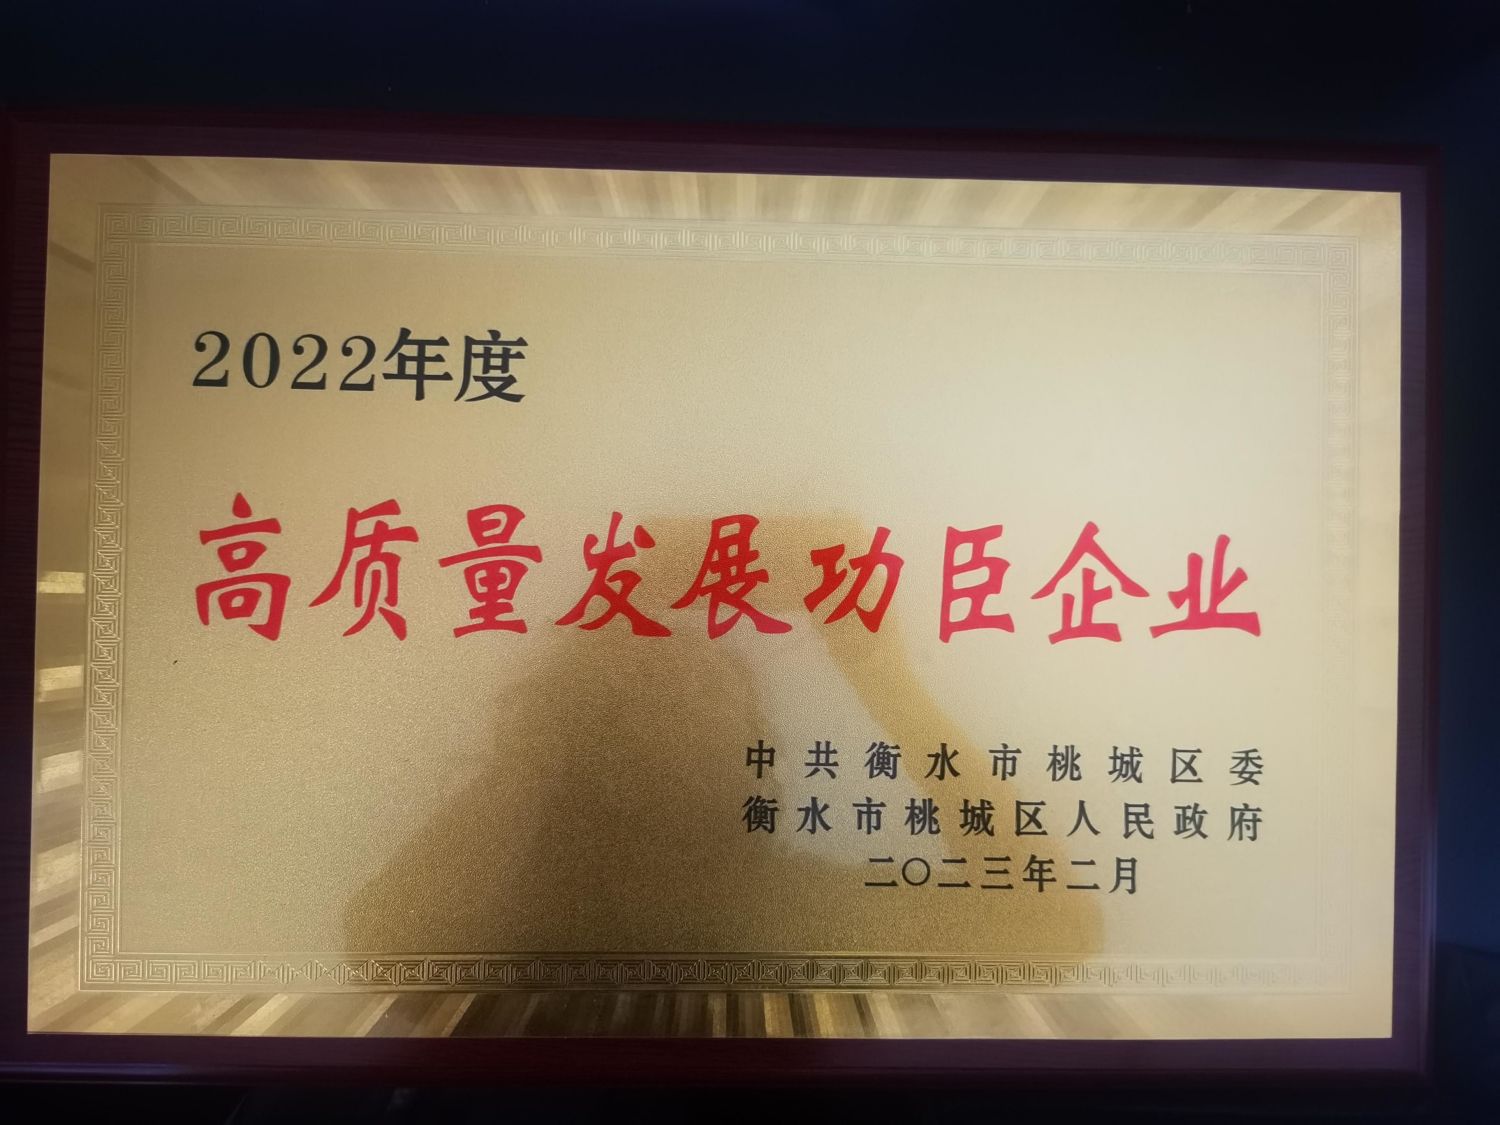 Félicitations à notre société (Hengshui Tianqin Import and Export Trade Co., Ltd) pour avoir remporté l'entreprise héroïne du développement de haute qualité en 2022.